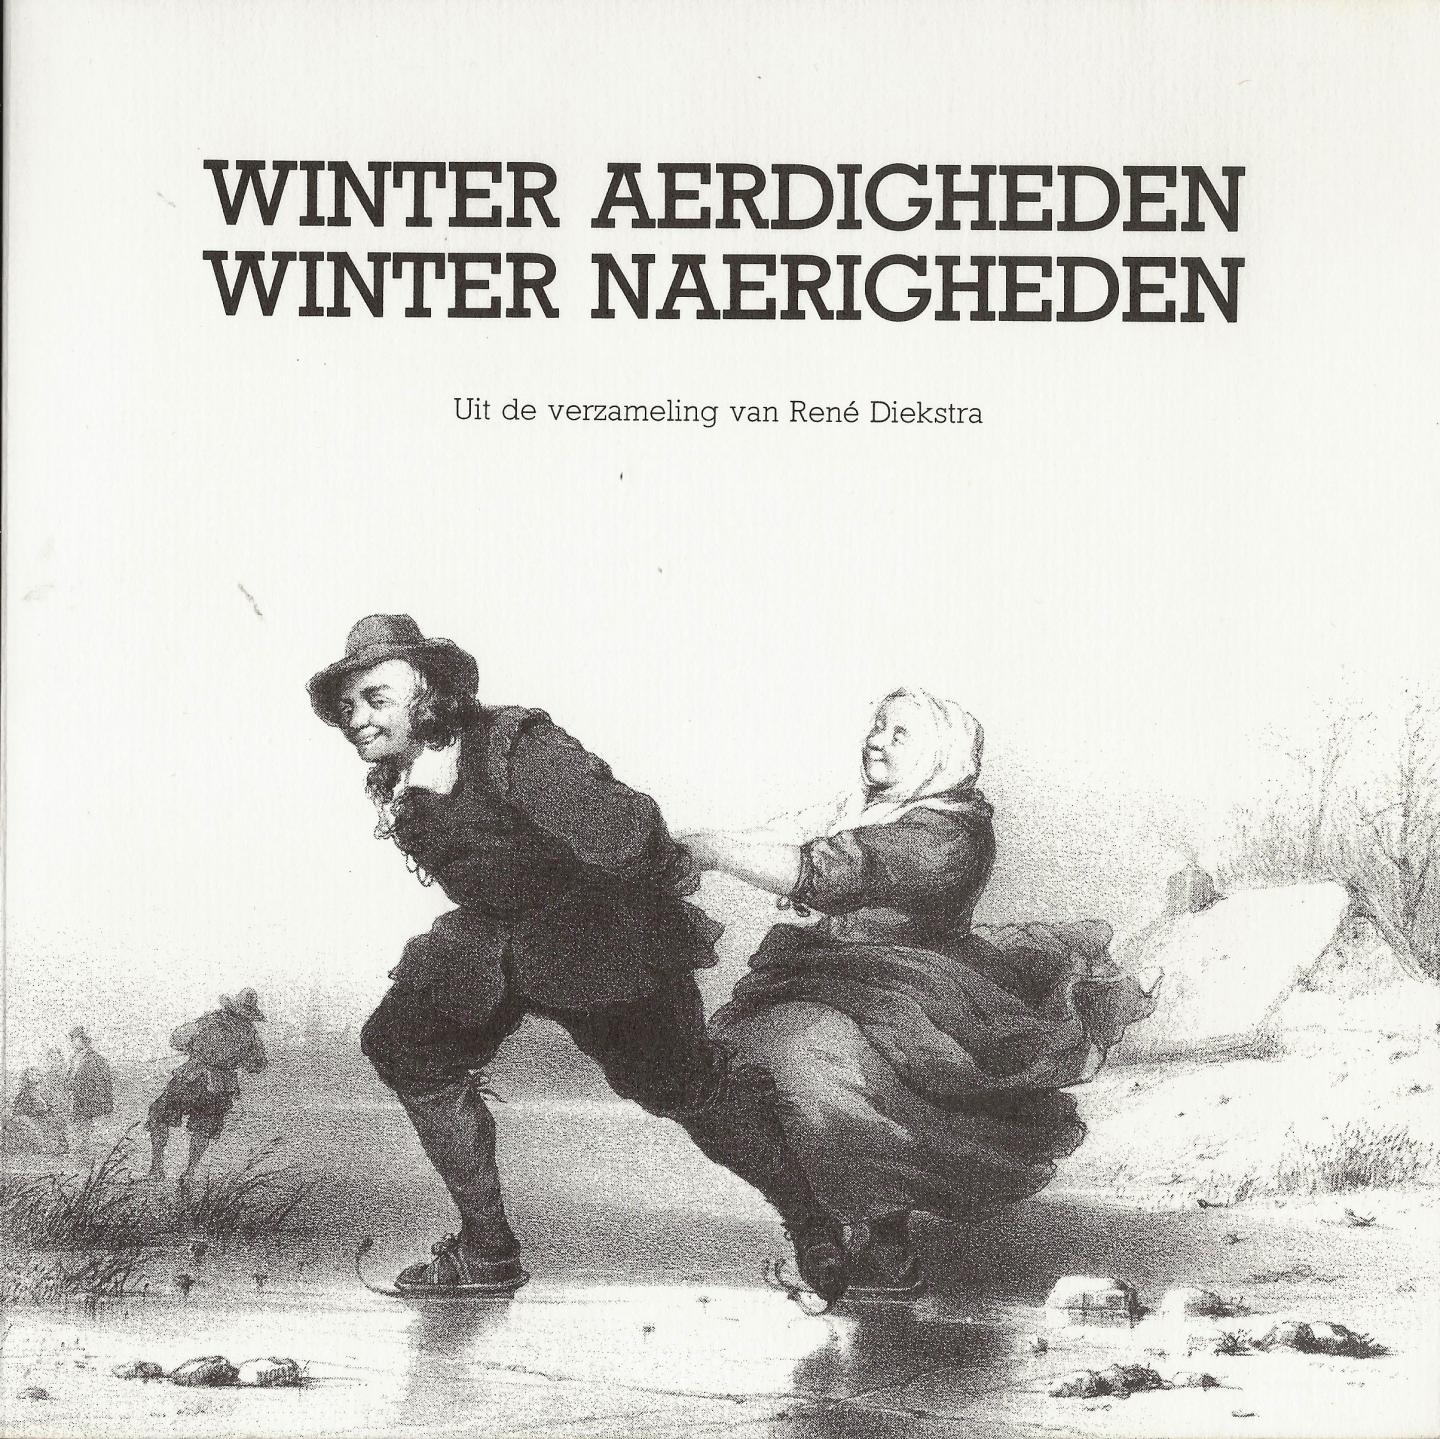 Diekstra, René - Winter aerdigheden : winter naerigheden ; beknopte overzicht van het ijsvermaak en de geschiedenis van de schaats